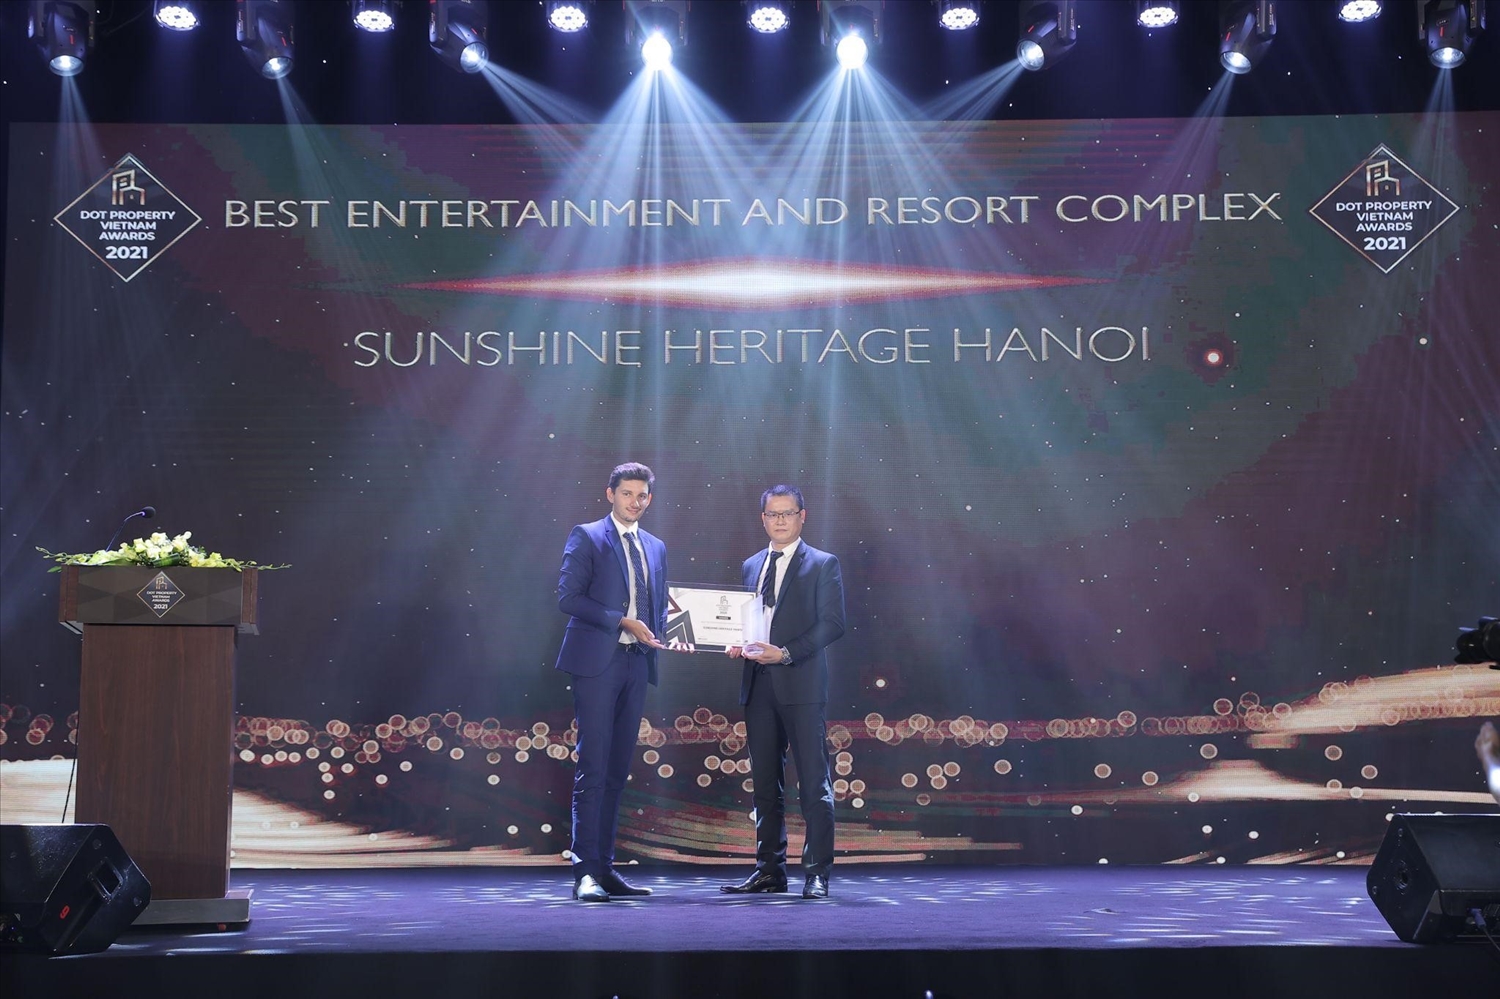 Dự án Sunshine Heritage Hà Nội xuất sắc giành giải Tổ hợp giải trí và nghỉ dưỡng tốt nhất Việt Nam 2021 - Best Entertainment and Resort Complex Vietnam 2021